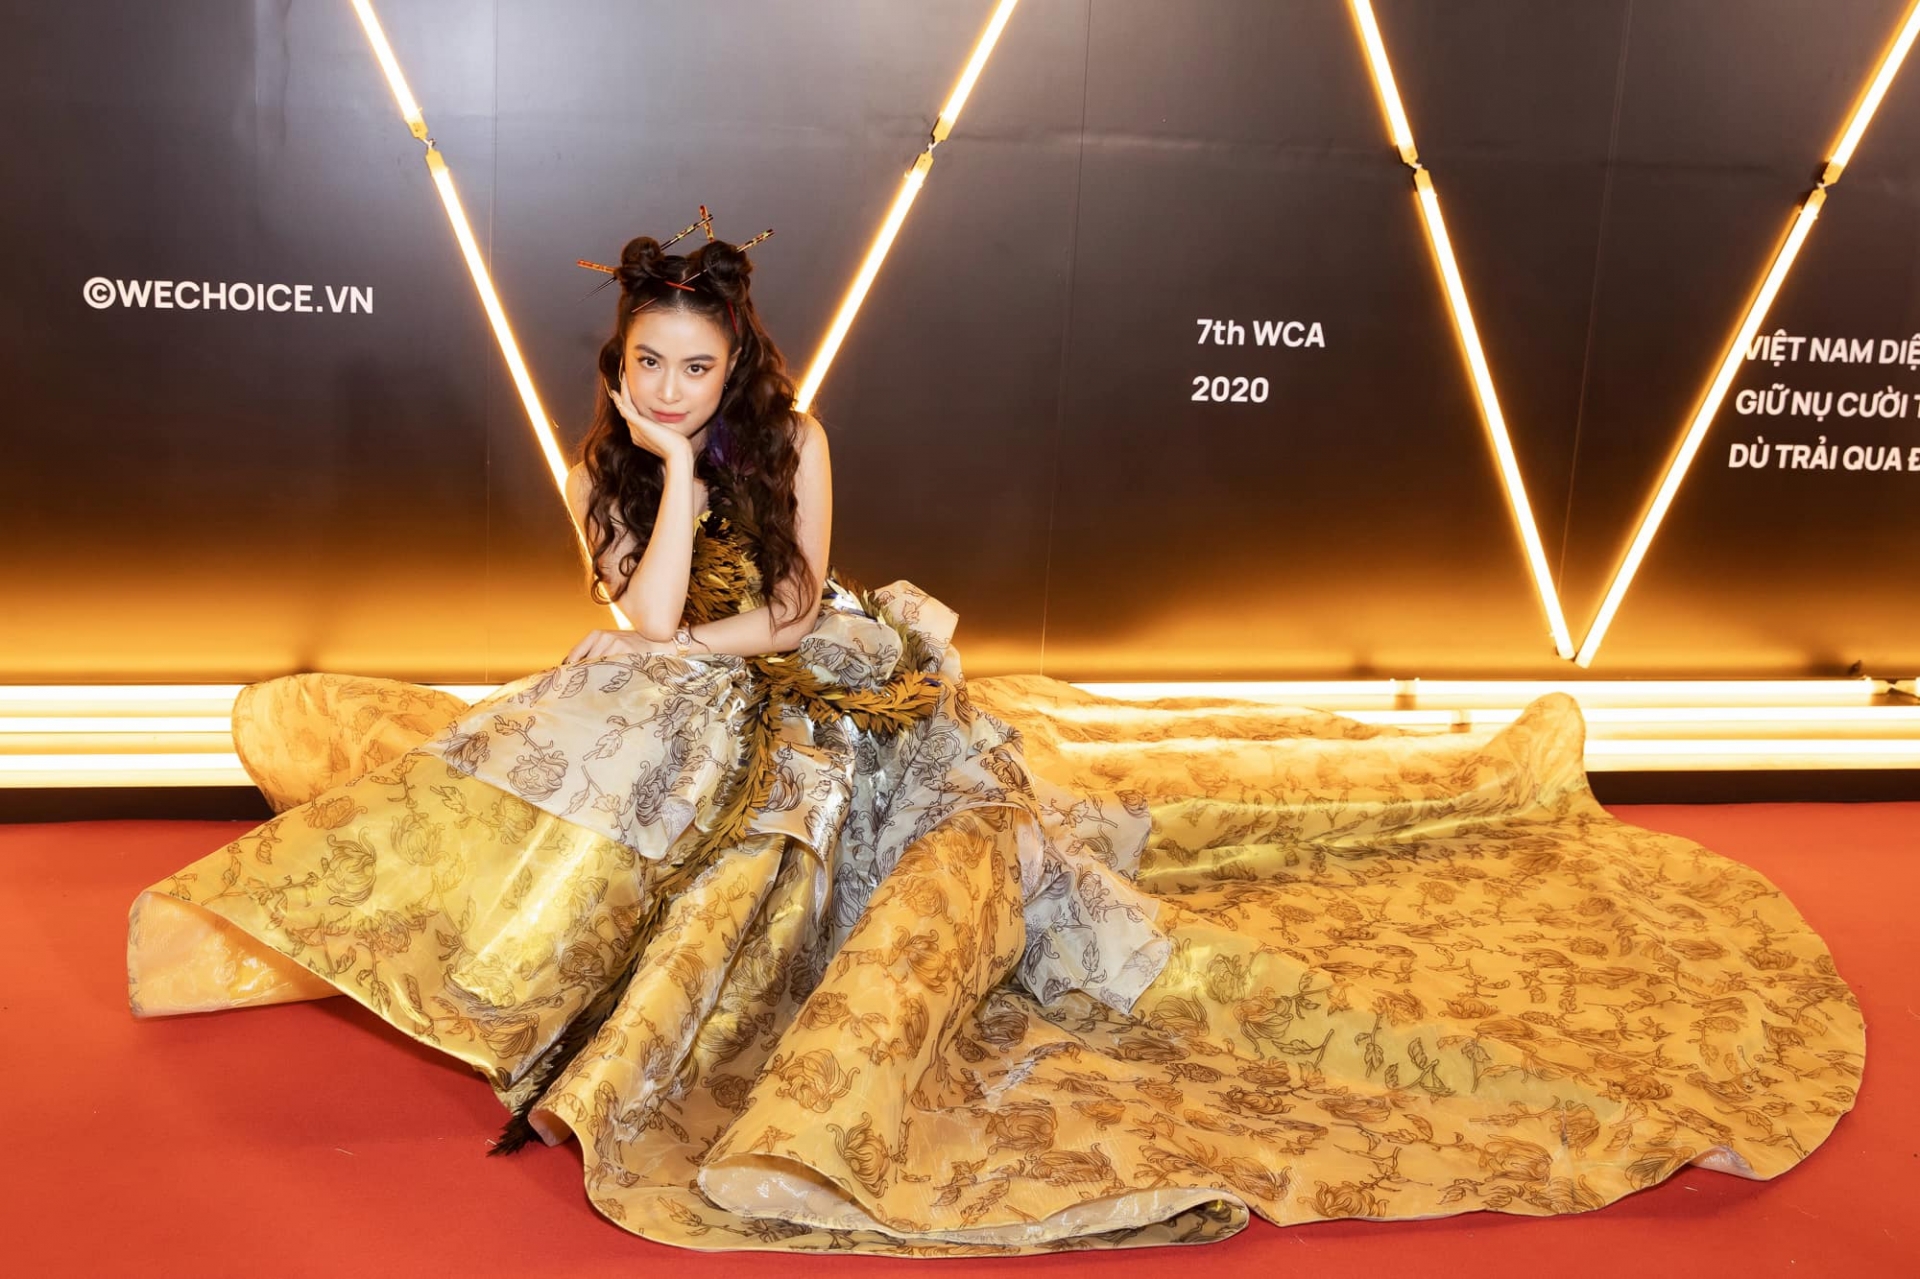 Bộ cánh chiếm trọn spotlight tại WeChoice Awards 2020 được may bằng chất liệu gấm, lấy cảm hứng từ trang phục quý tộc khiến Hoàng Thùy Linh đẹp như một bà hoàng.